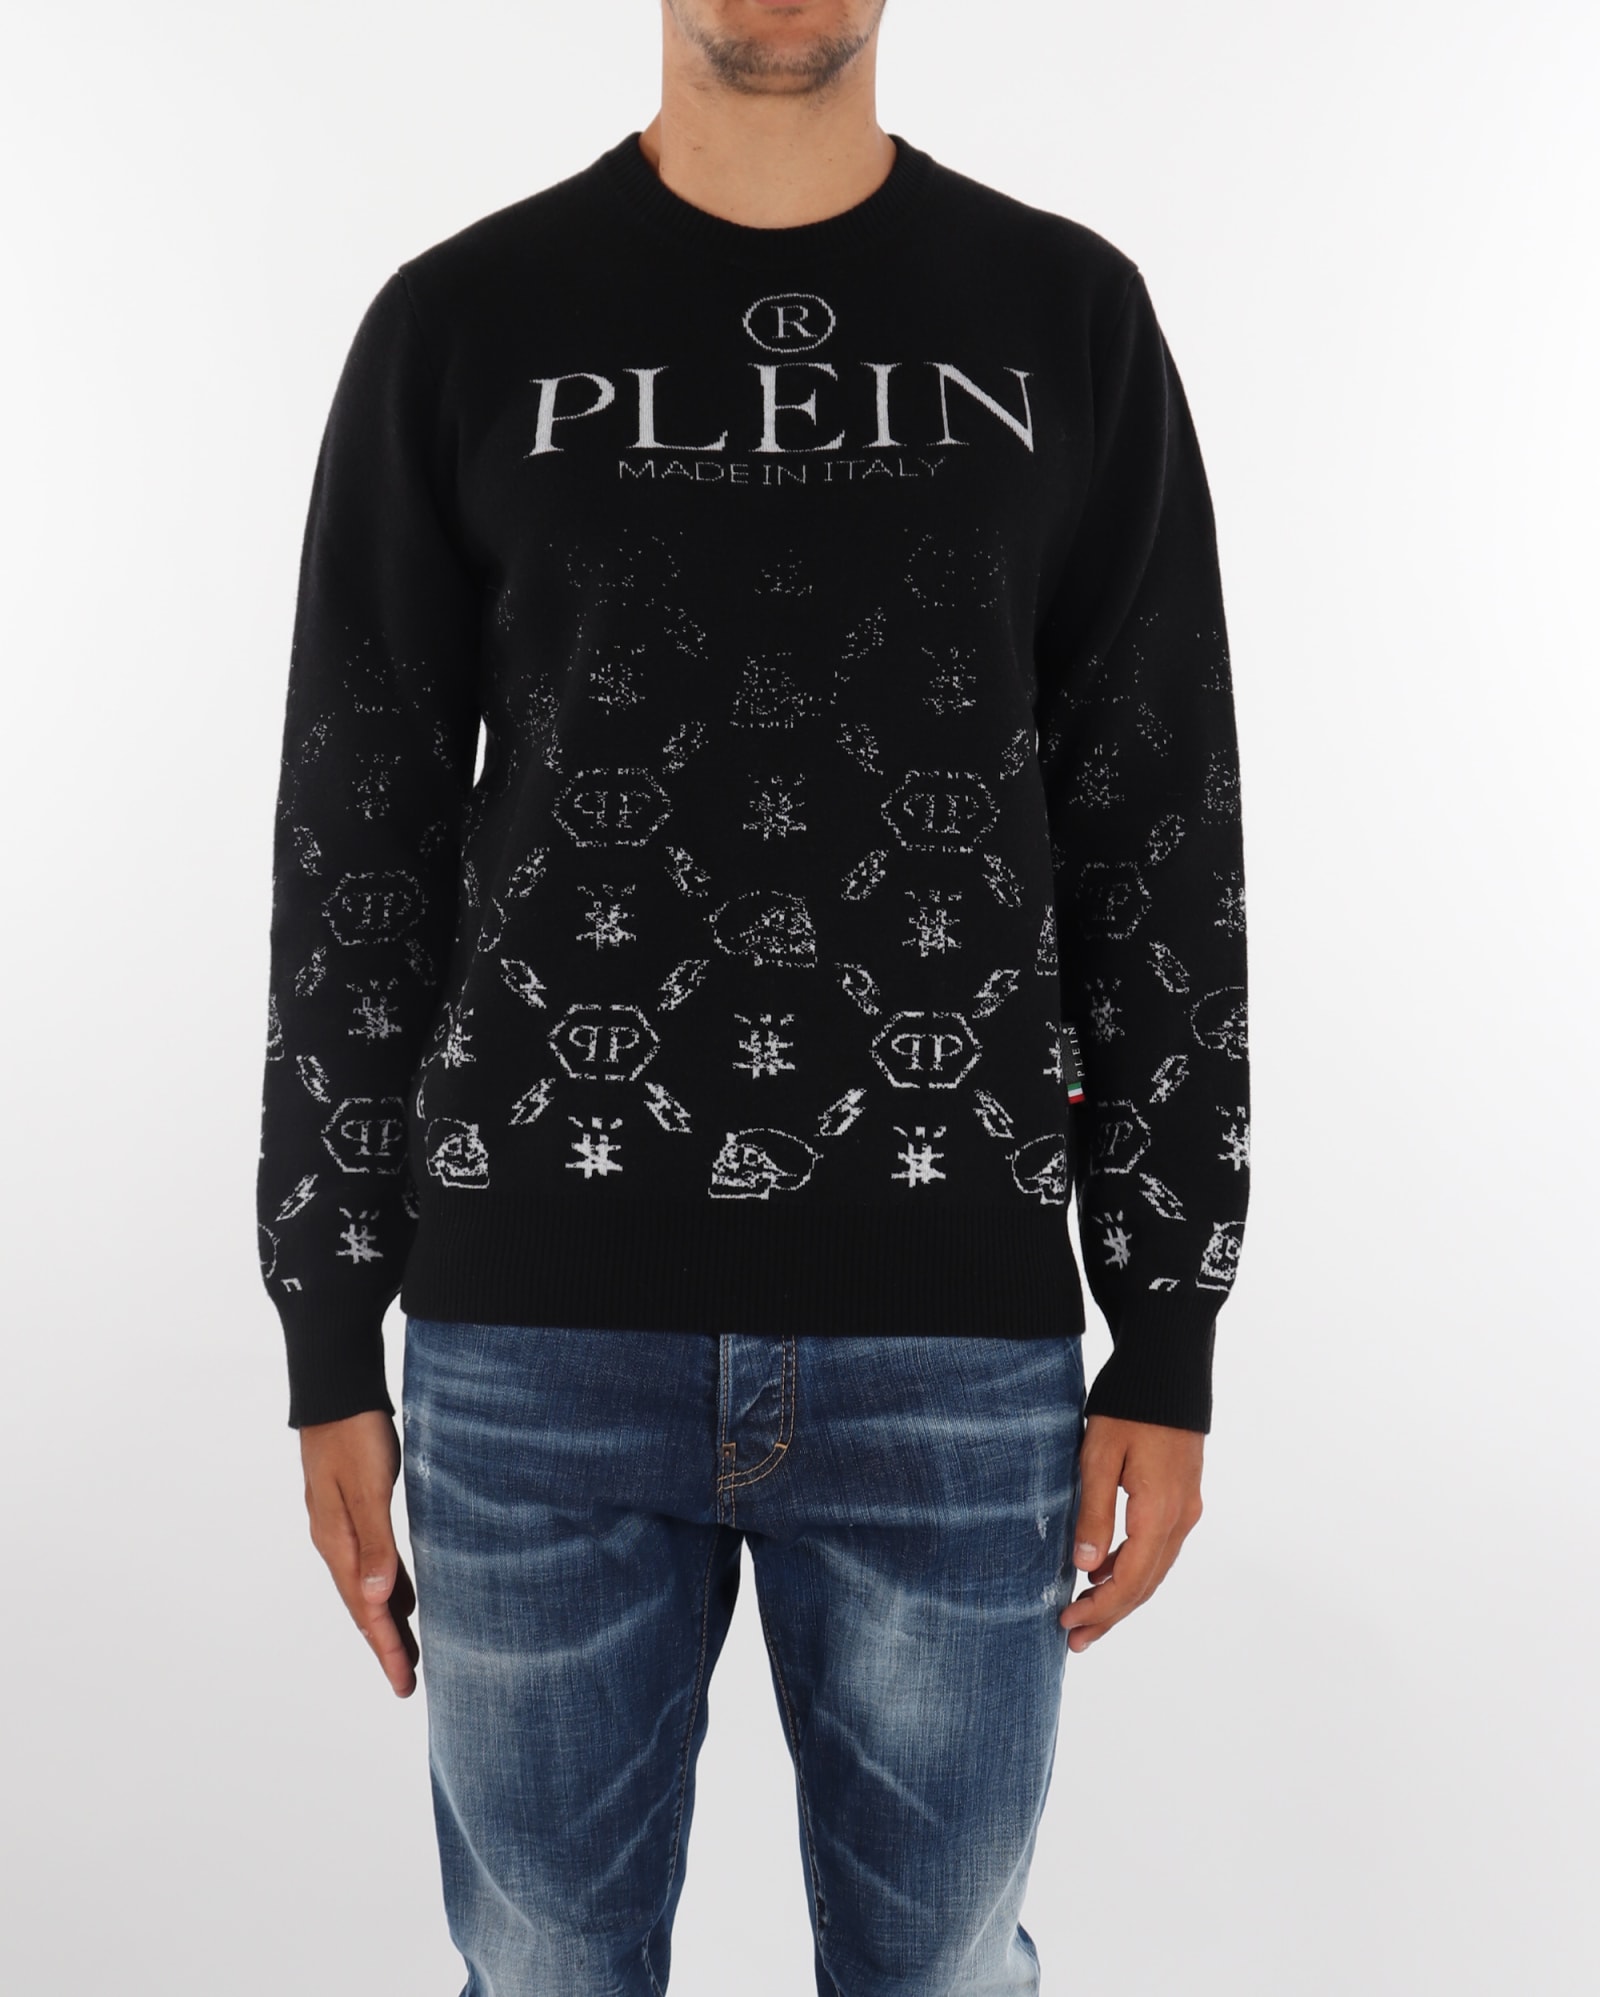 Philipp Plein Pullover Round Neck Sweater